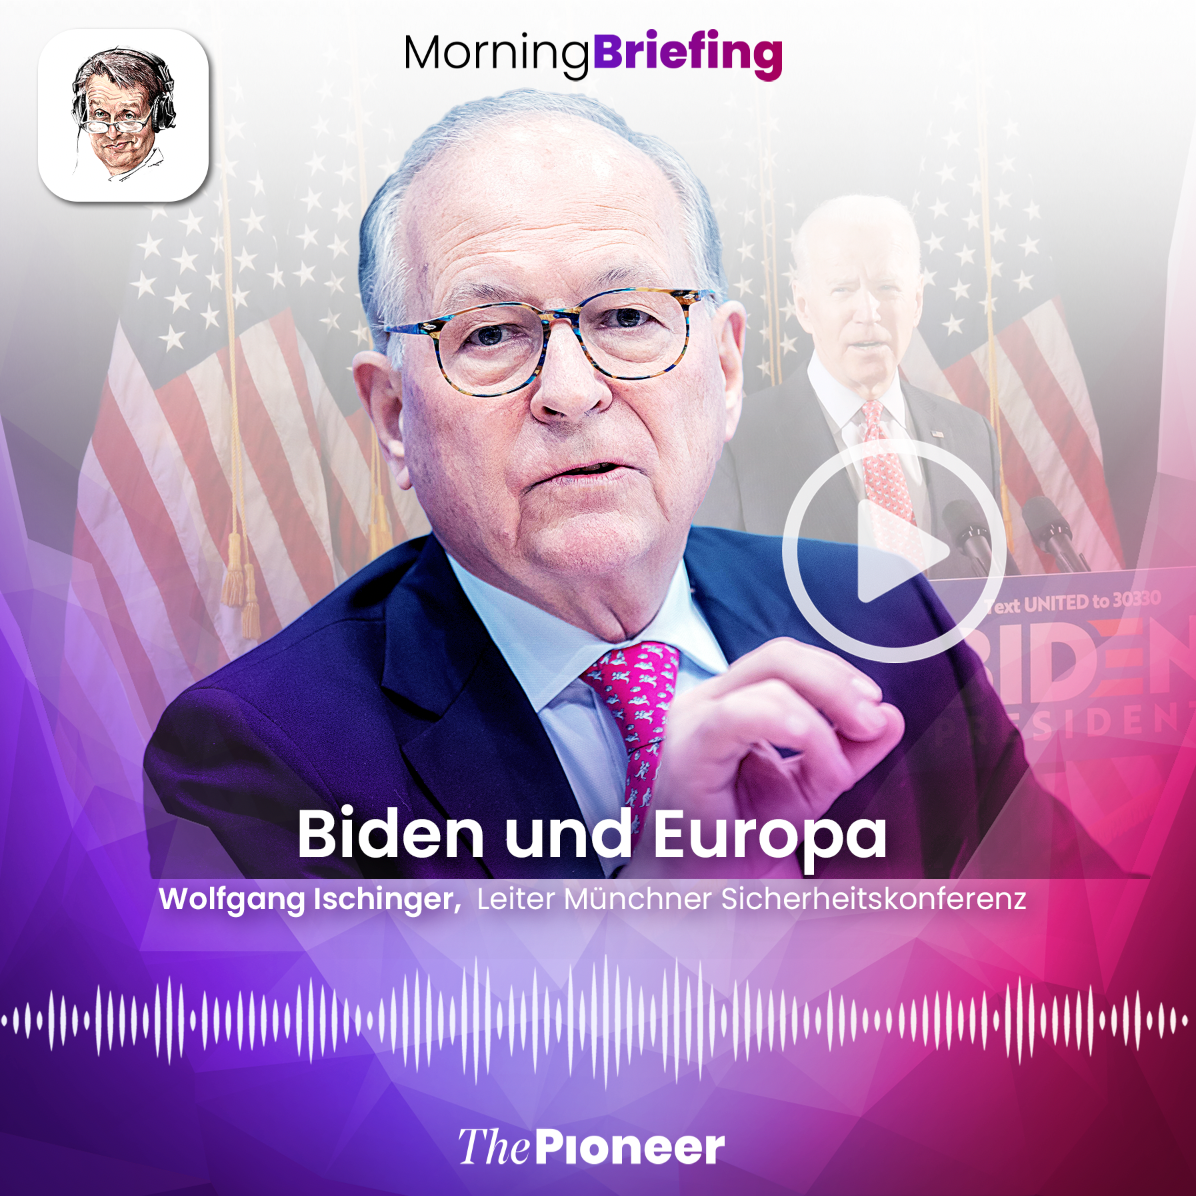 20201106-image-media pioneer-morning briefing-Kachel Ischinger